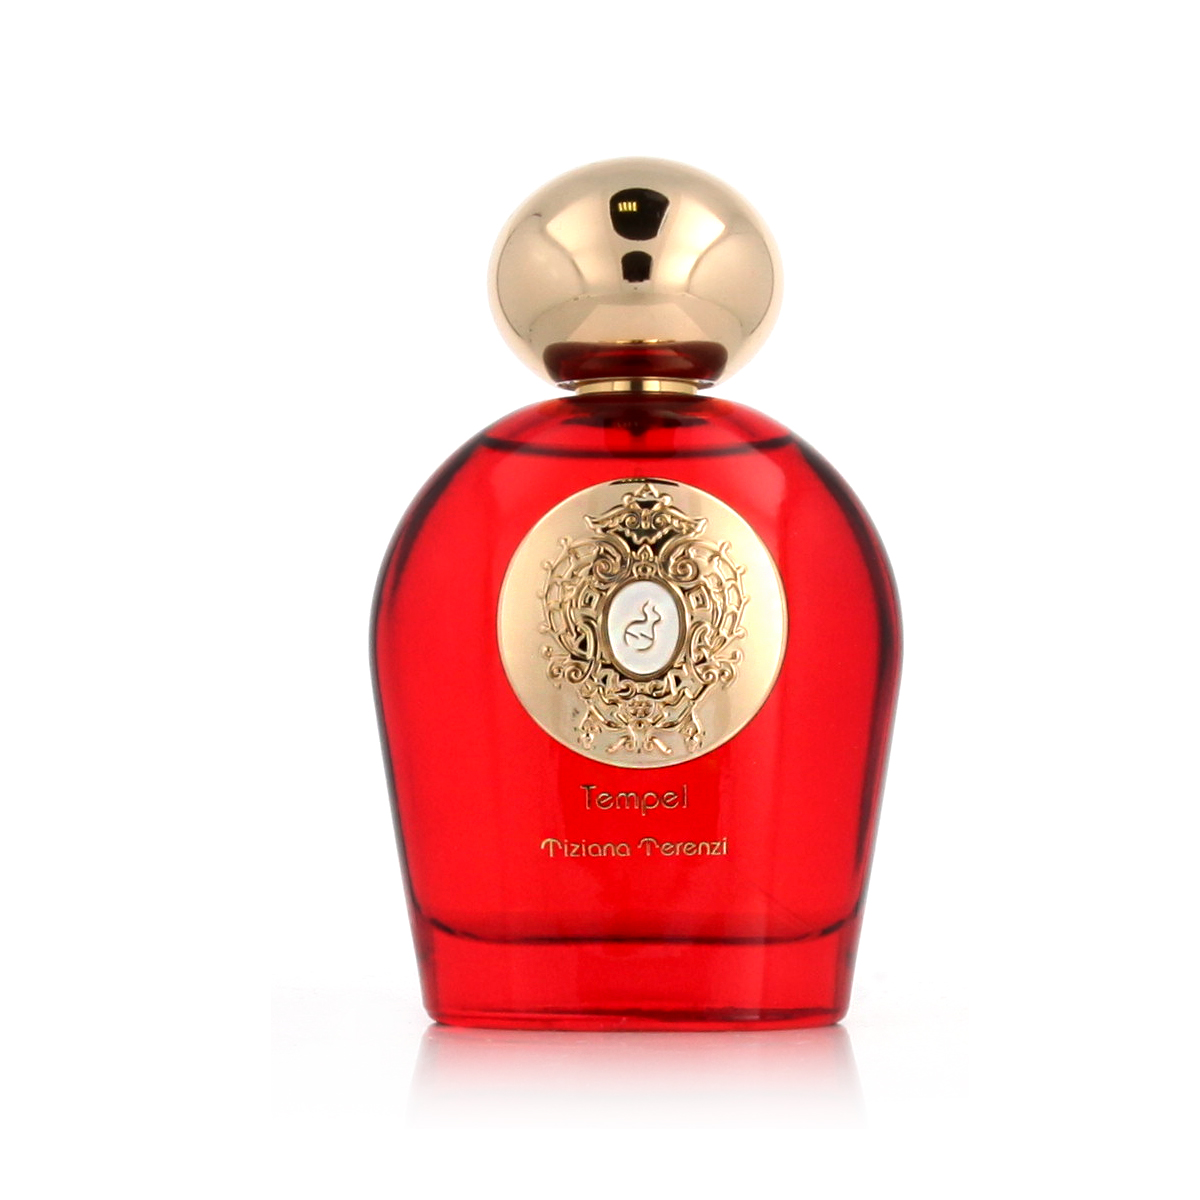 Tiziana Terenzi Tempel 20 ml NIŠINIAI kvepalų mėginukas (atomaizeris) Unisex Parfum